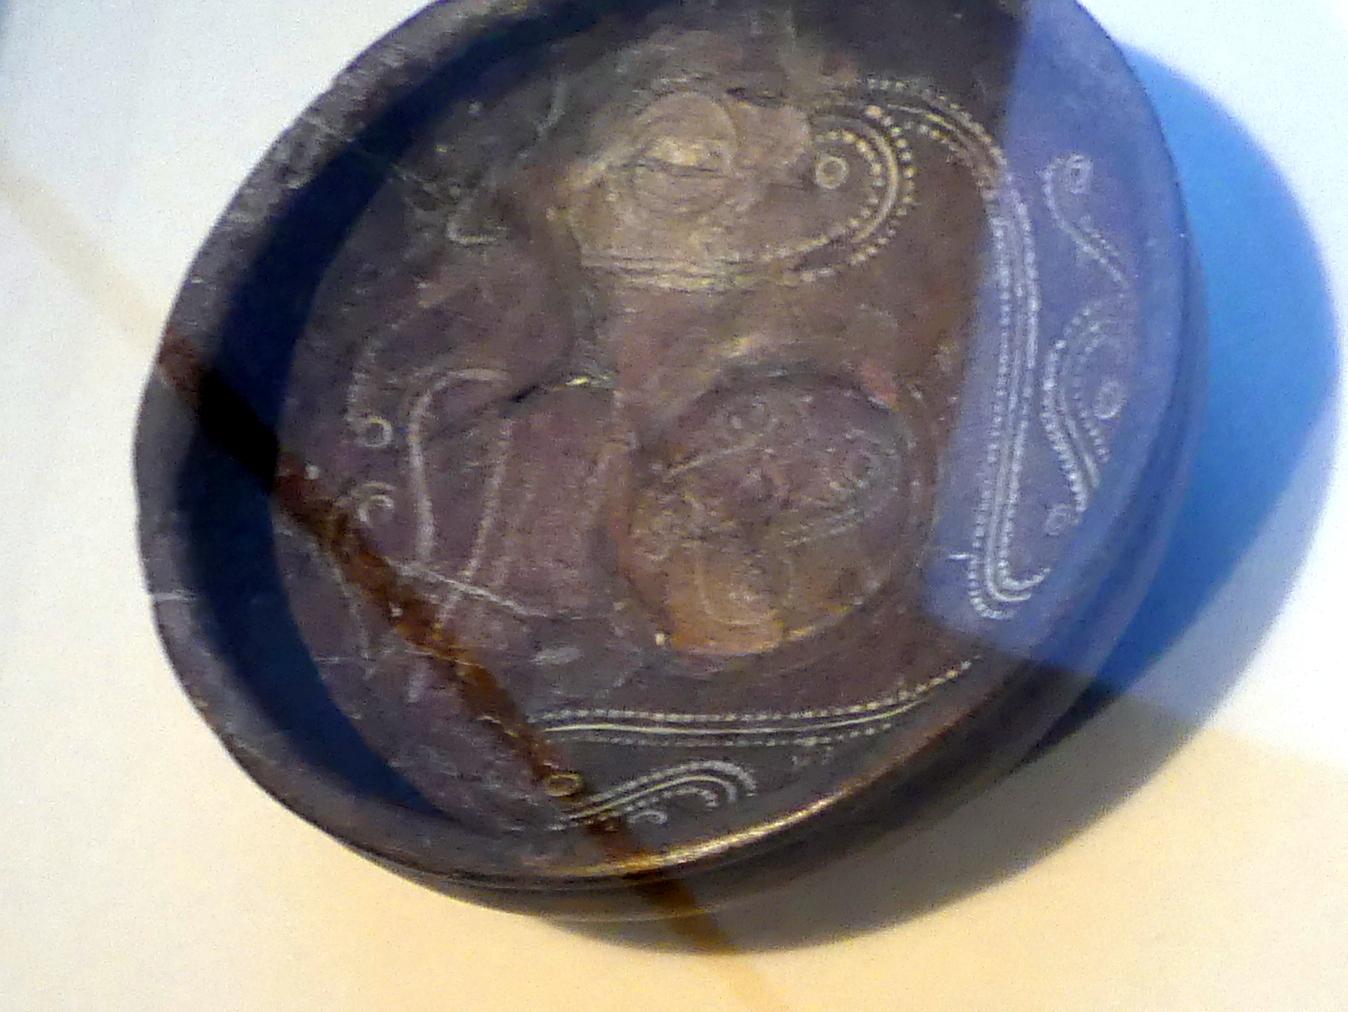 Braubacher Schale, verziert mit Rollrädchendekor, Latènezeit, 700 - 1 v. Chr.